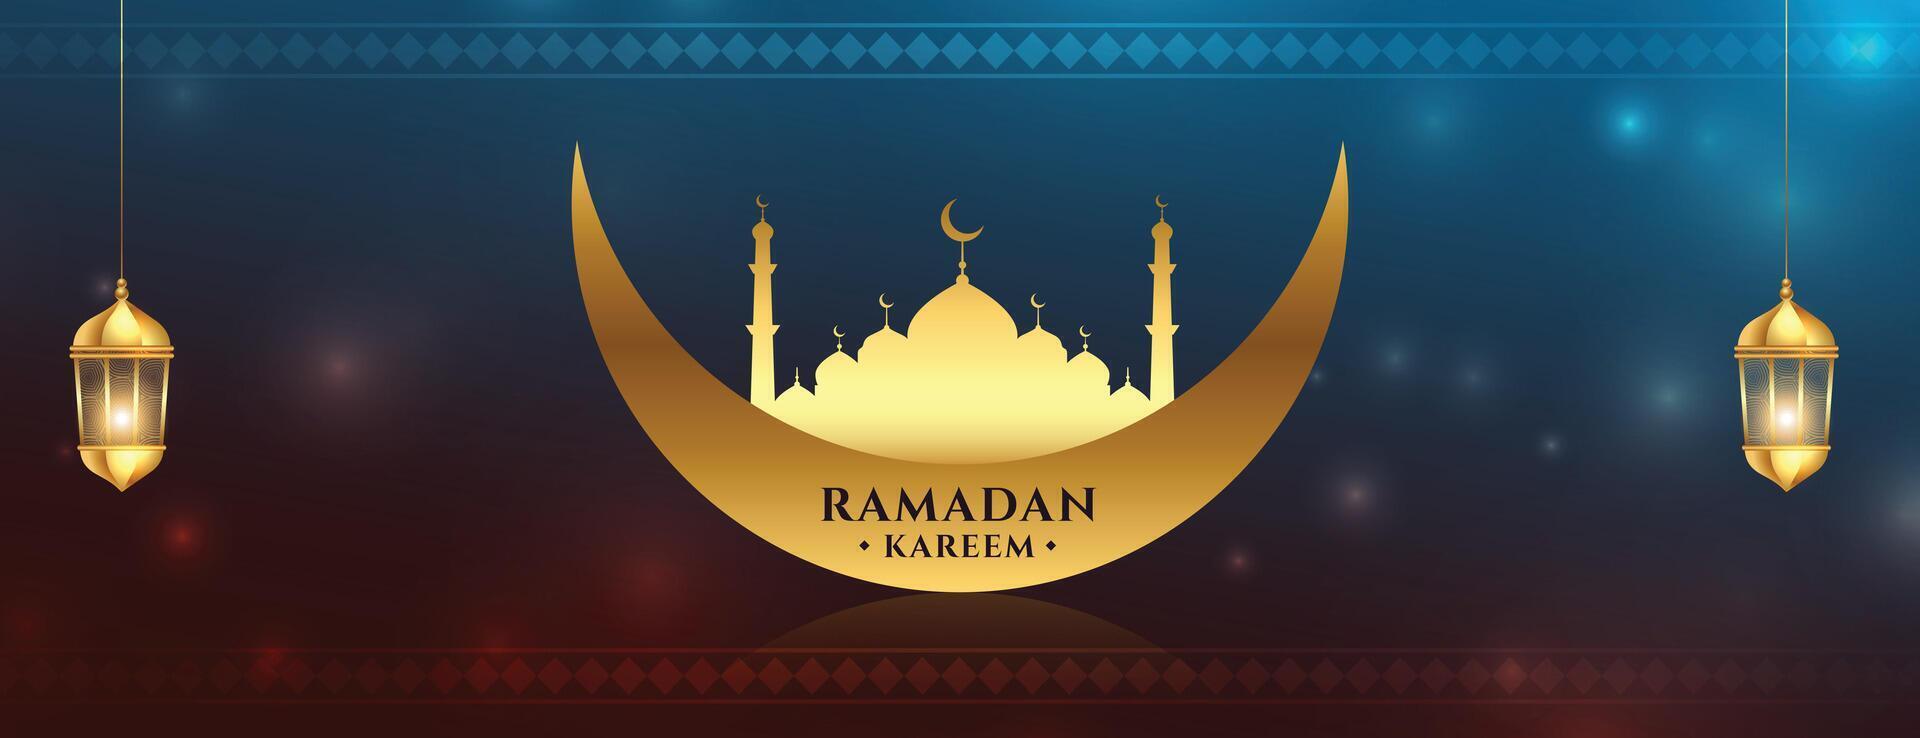 Ramadan kareem zegen banier met gouden moskee en maan vector